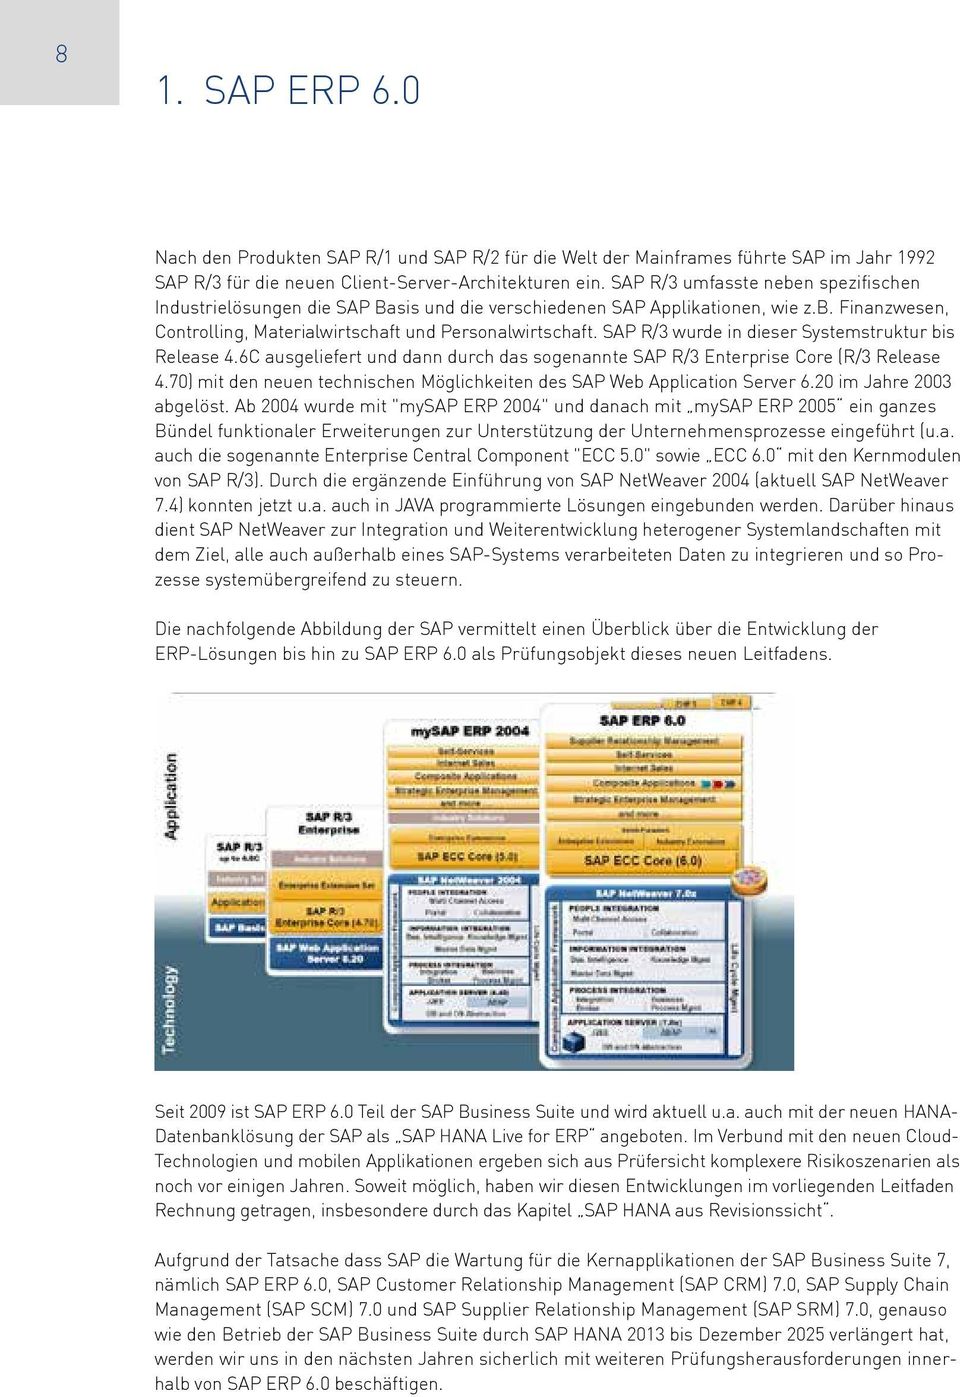 SAP R/3 wurde in dieser Systemstruktur bis Release 4.6C ausgeliefert und dann durch das sogenannte SAP R/3 Enterprise Core (R/3 Release 4.